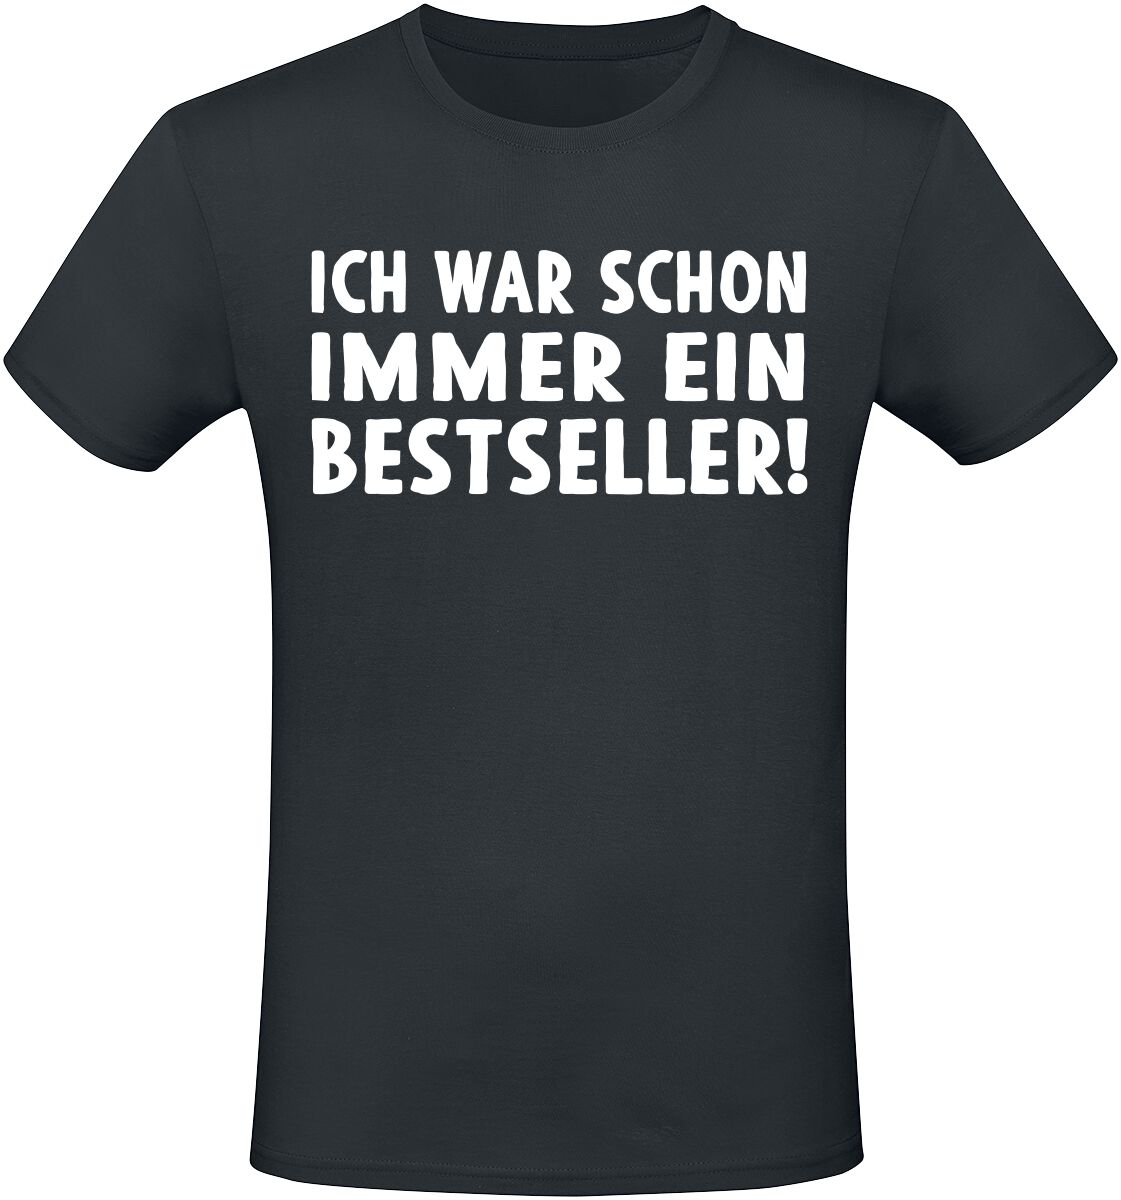 Sprüche T-Shirt - Ich war schon immer ein Bestseller! - M bis 5XL - für Männer - Größe 5XL - schwarz